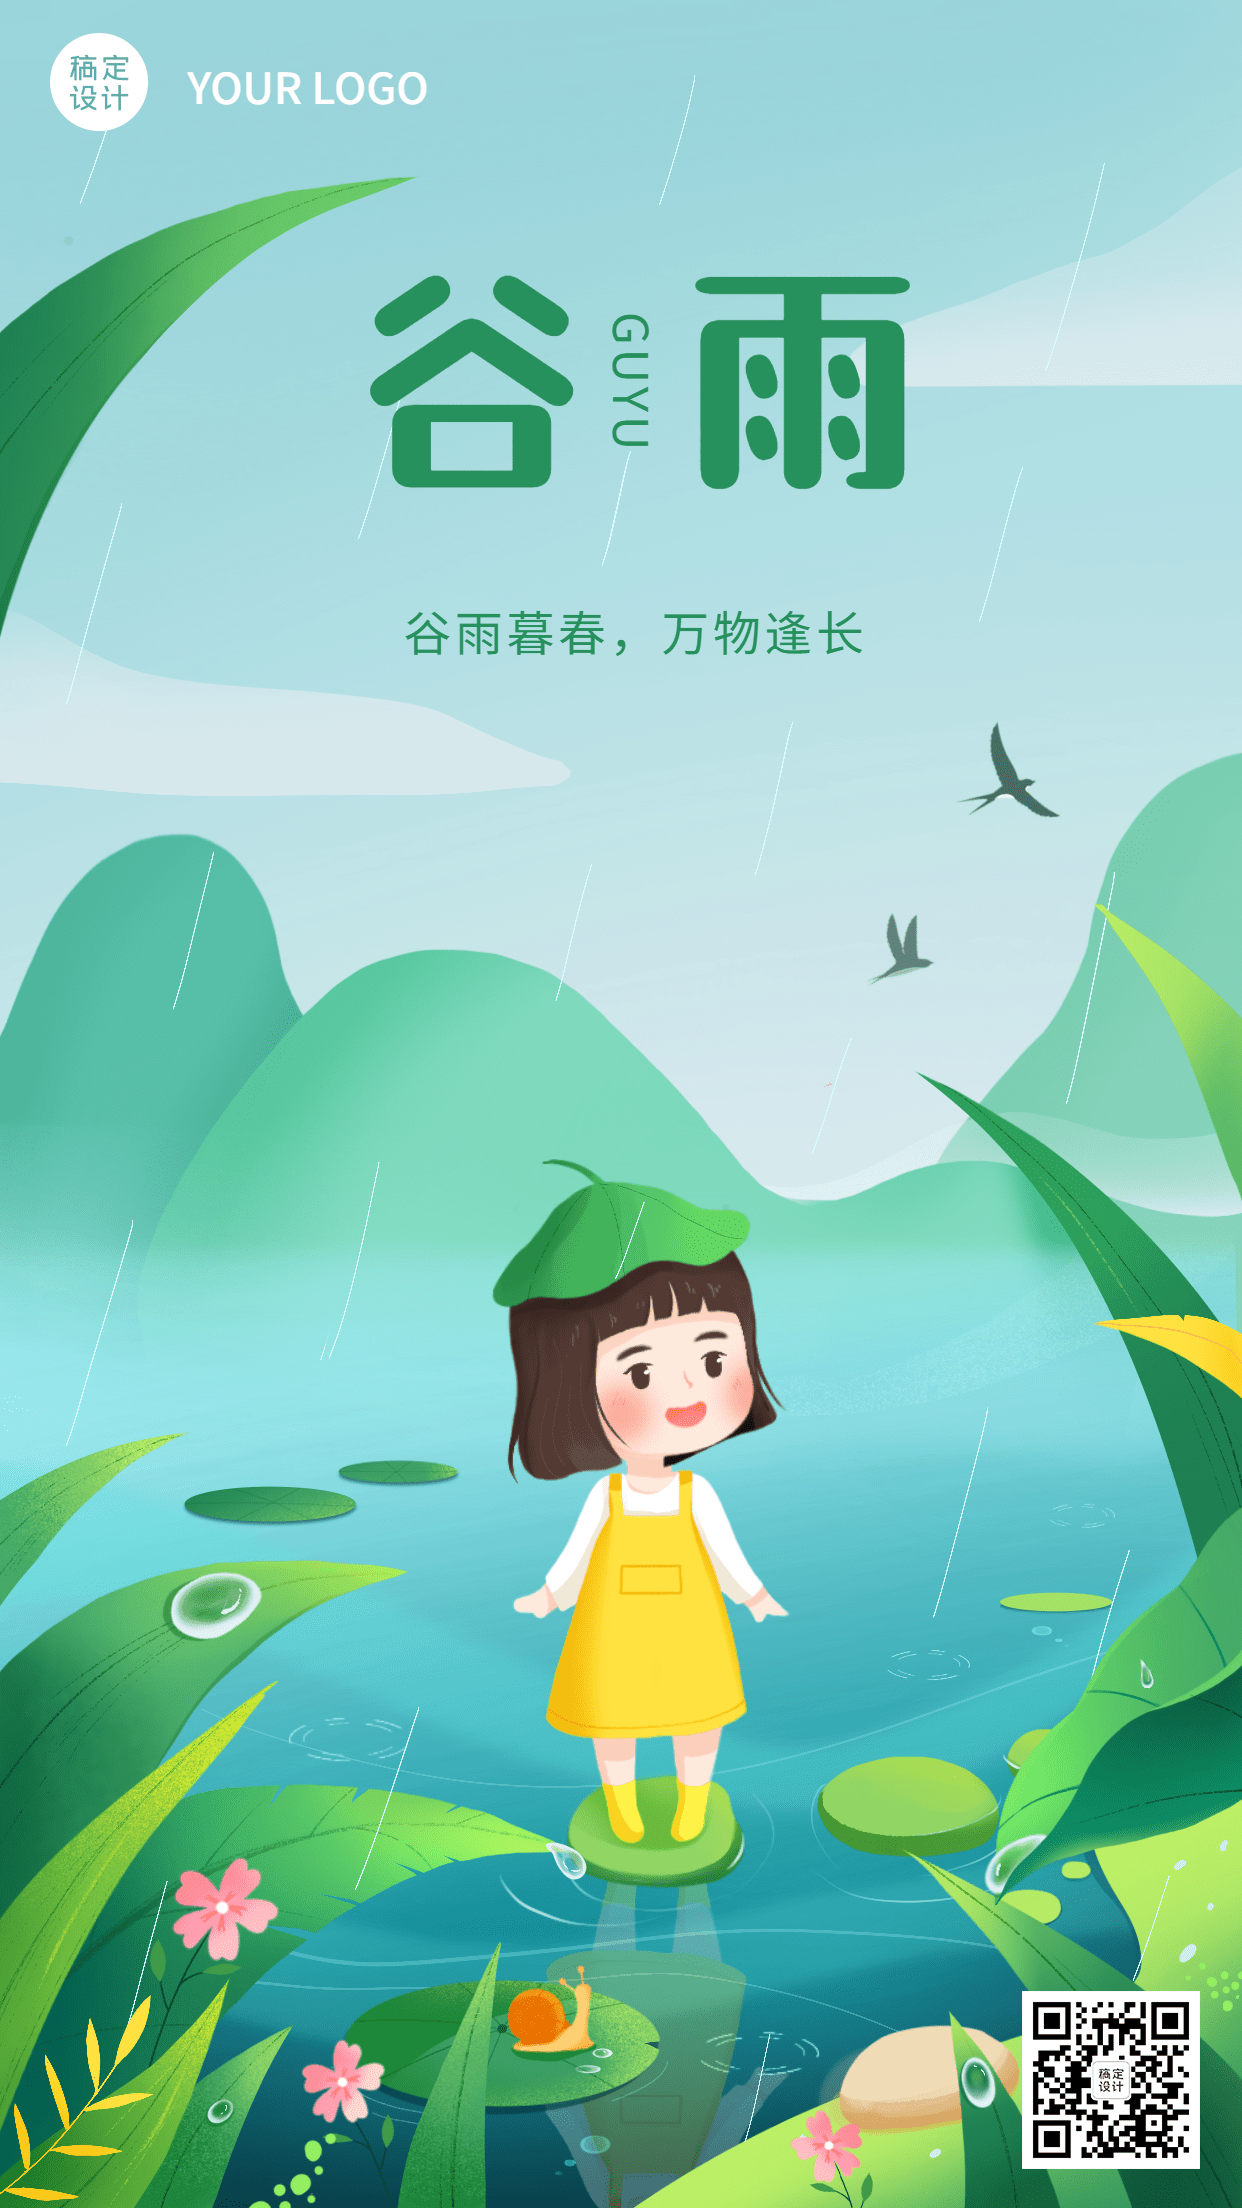 谷雨节气祝福插画手机海报